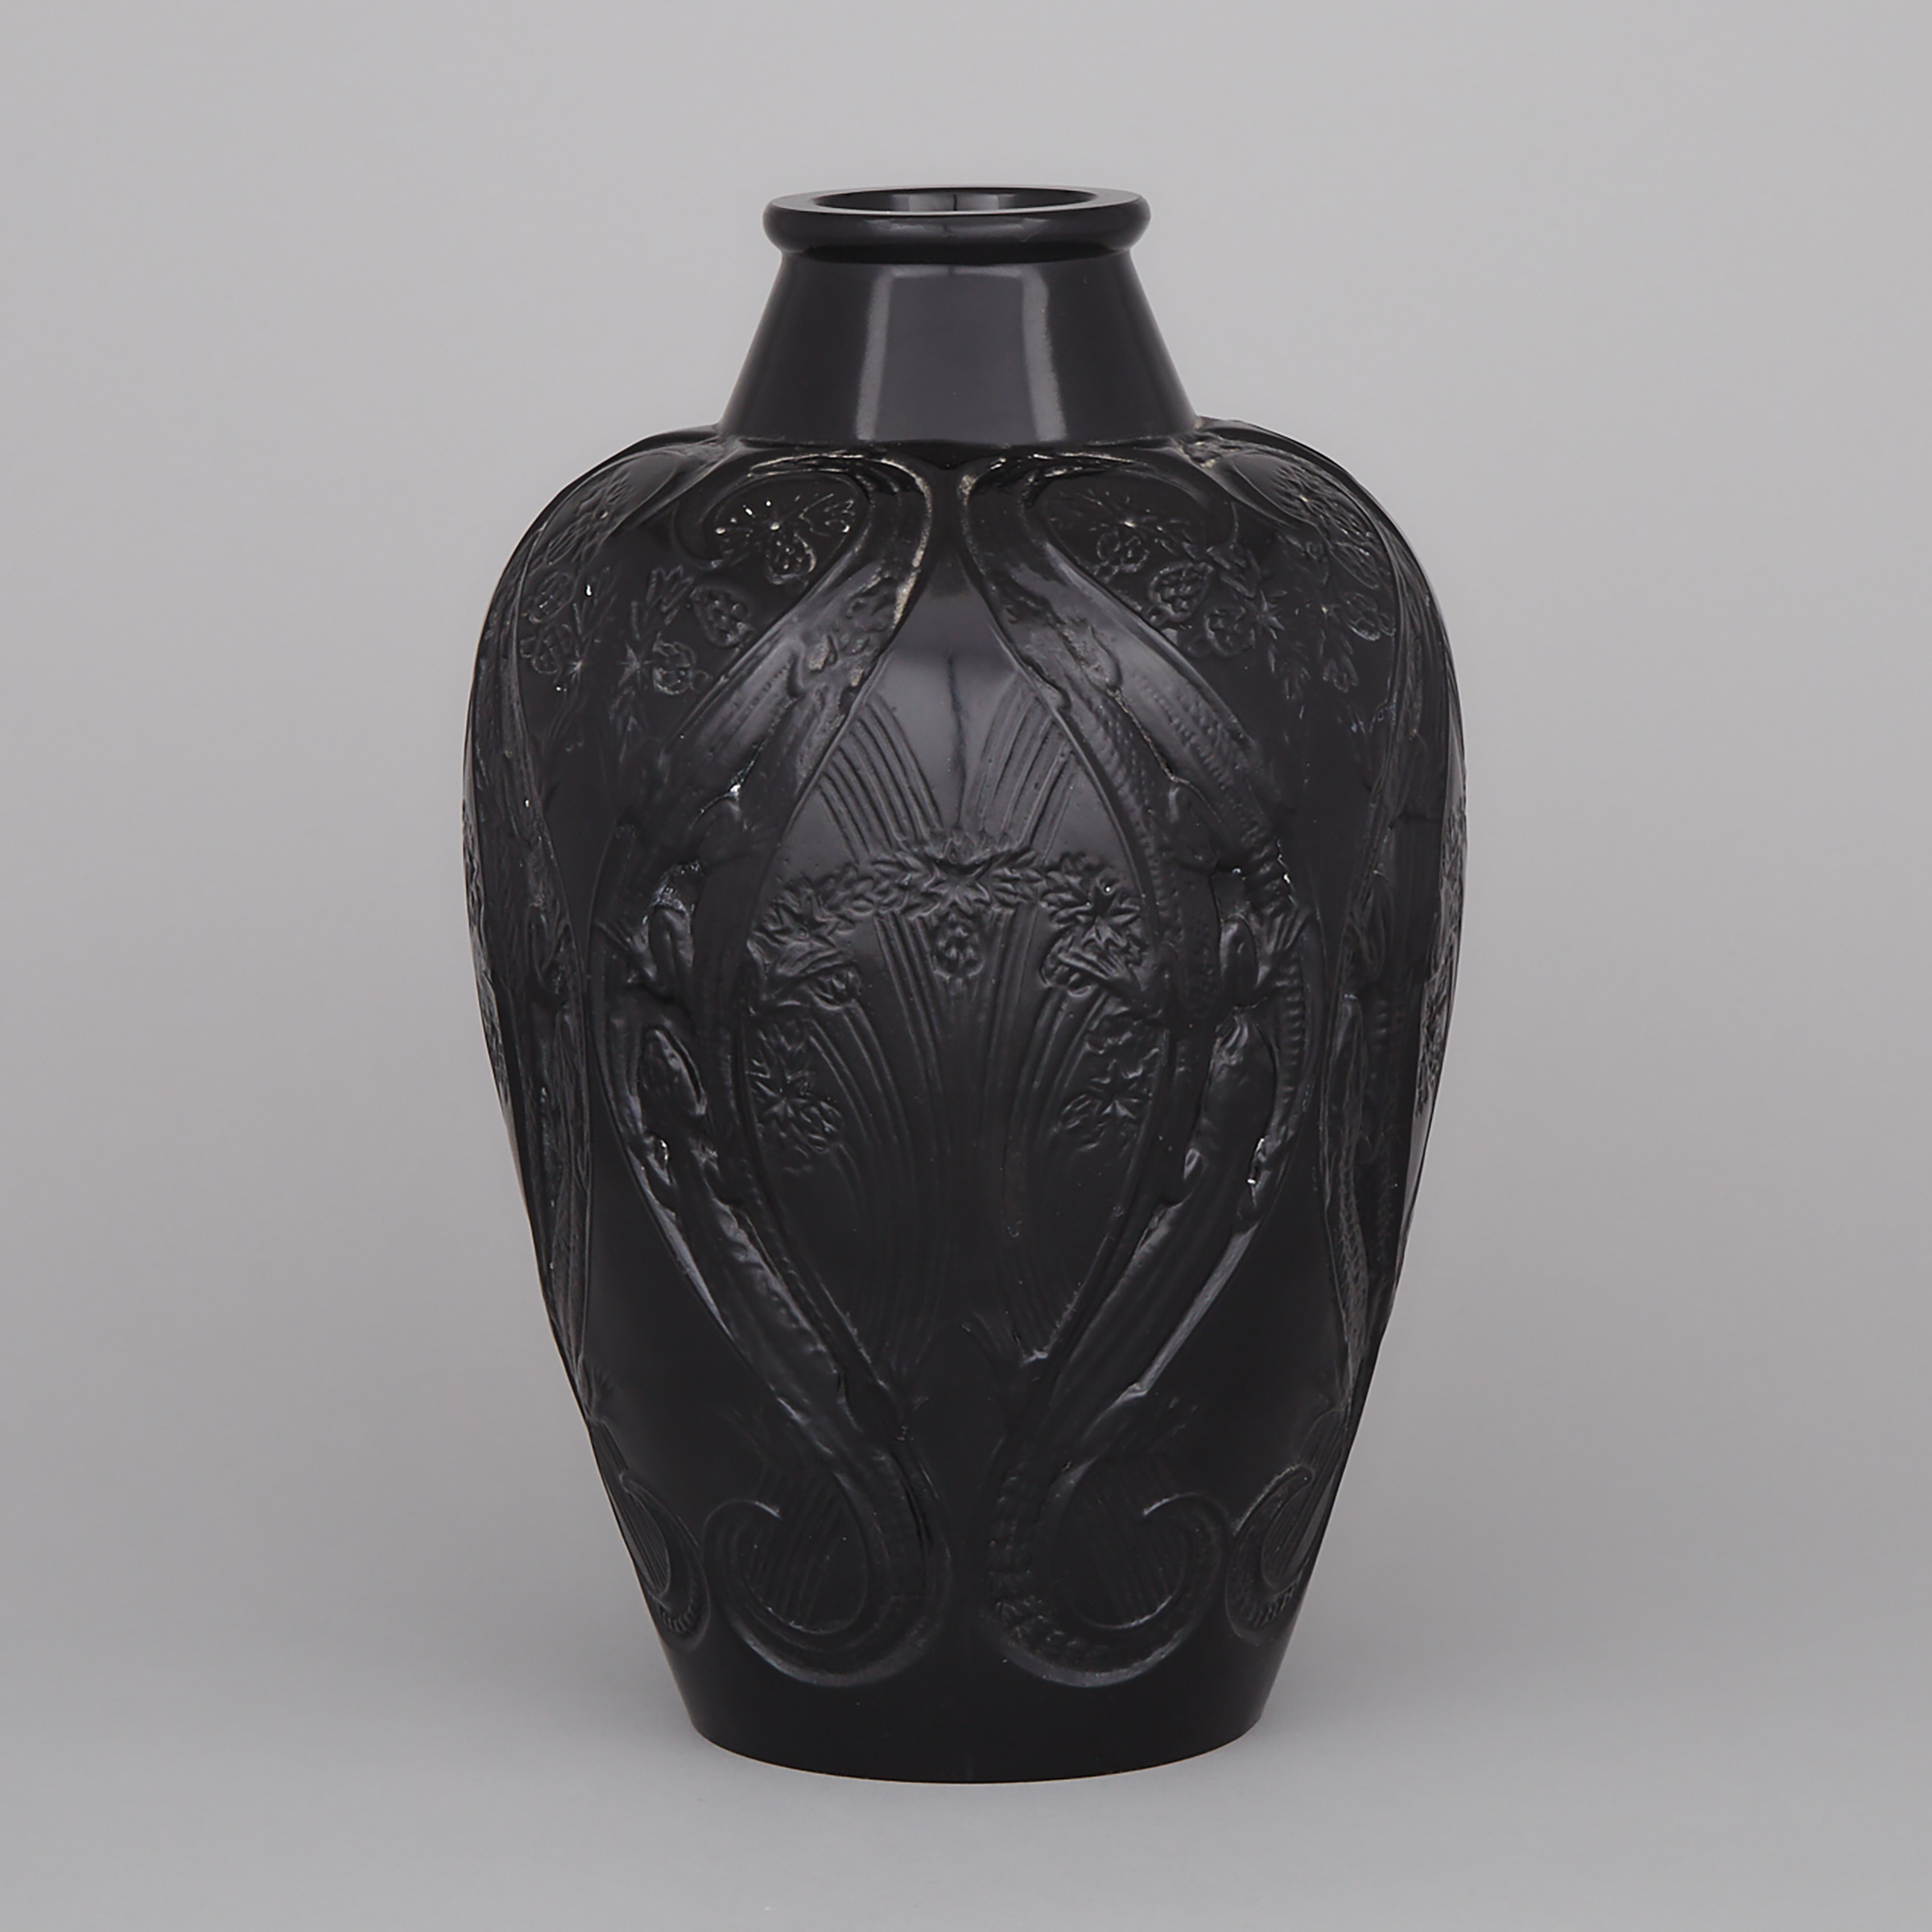 ‘Lézards et Bluets’, Lalique Moulded Black Glass Vase, c.1920